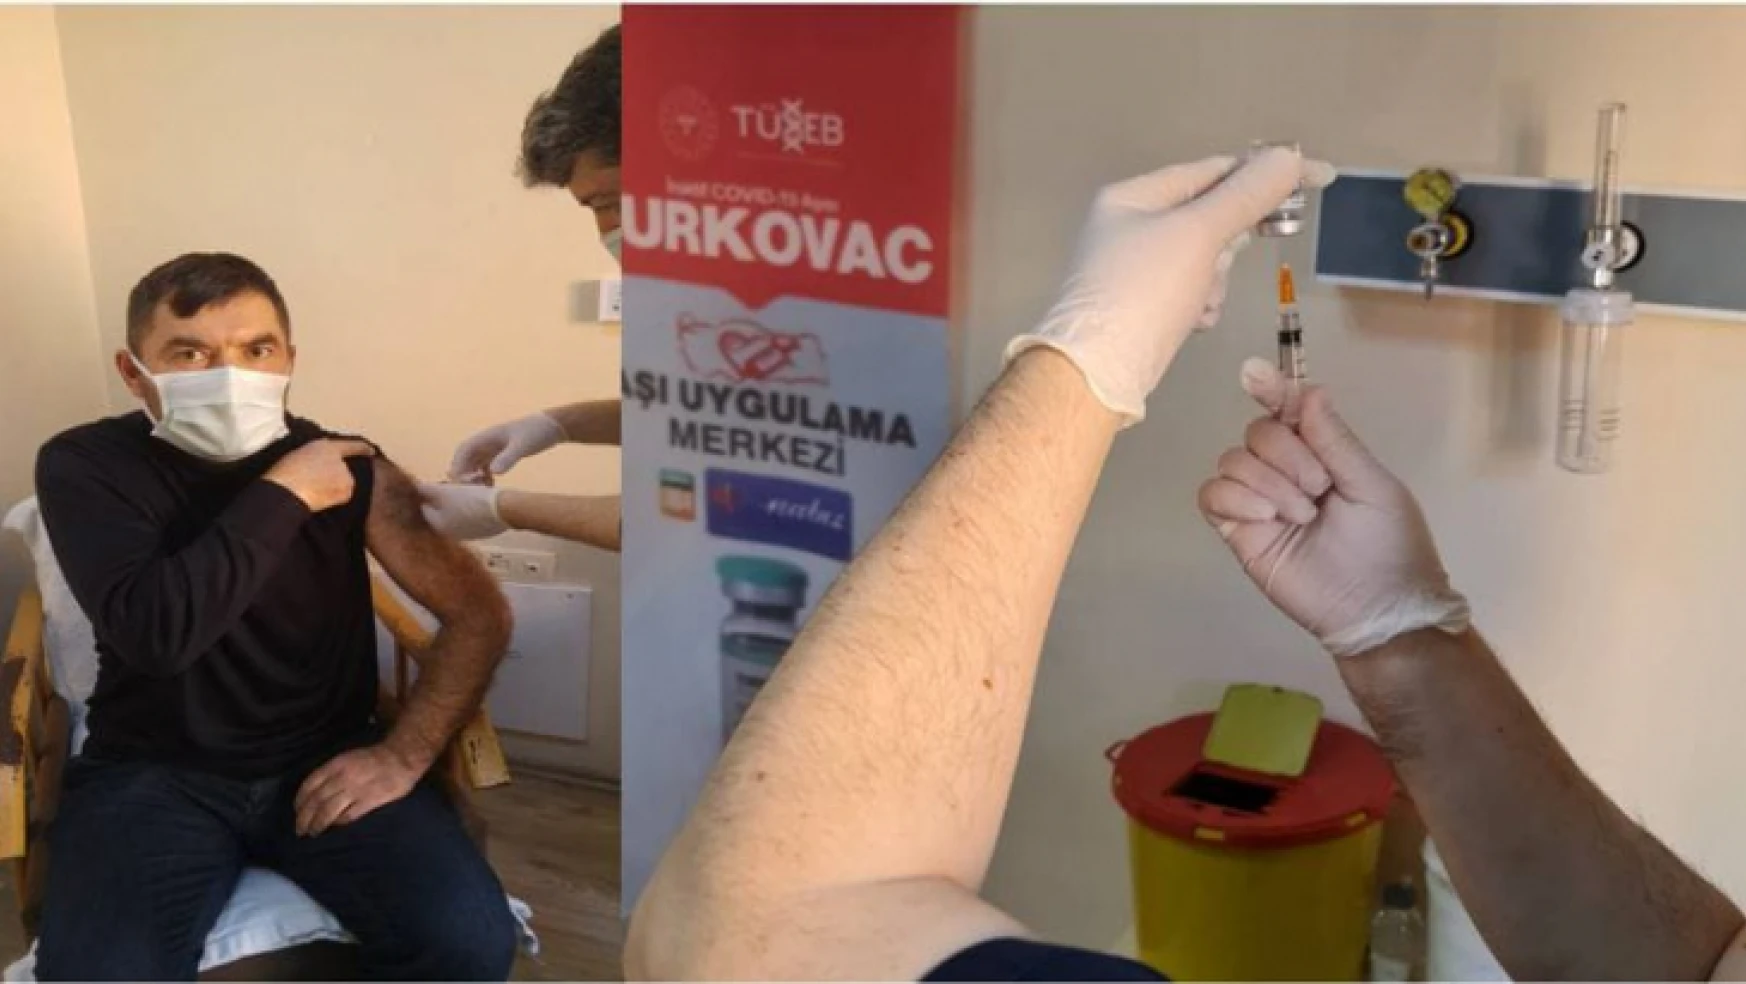 Turkovac aşısı Bartın'da